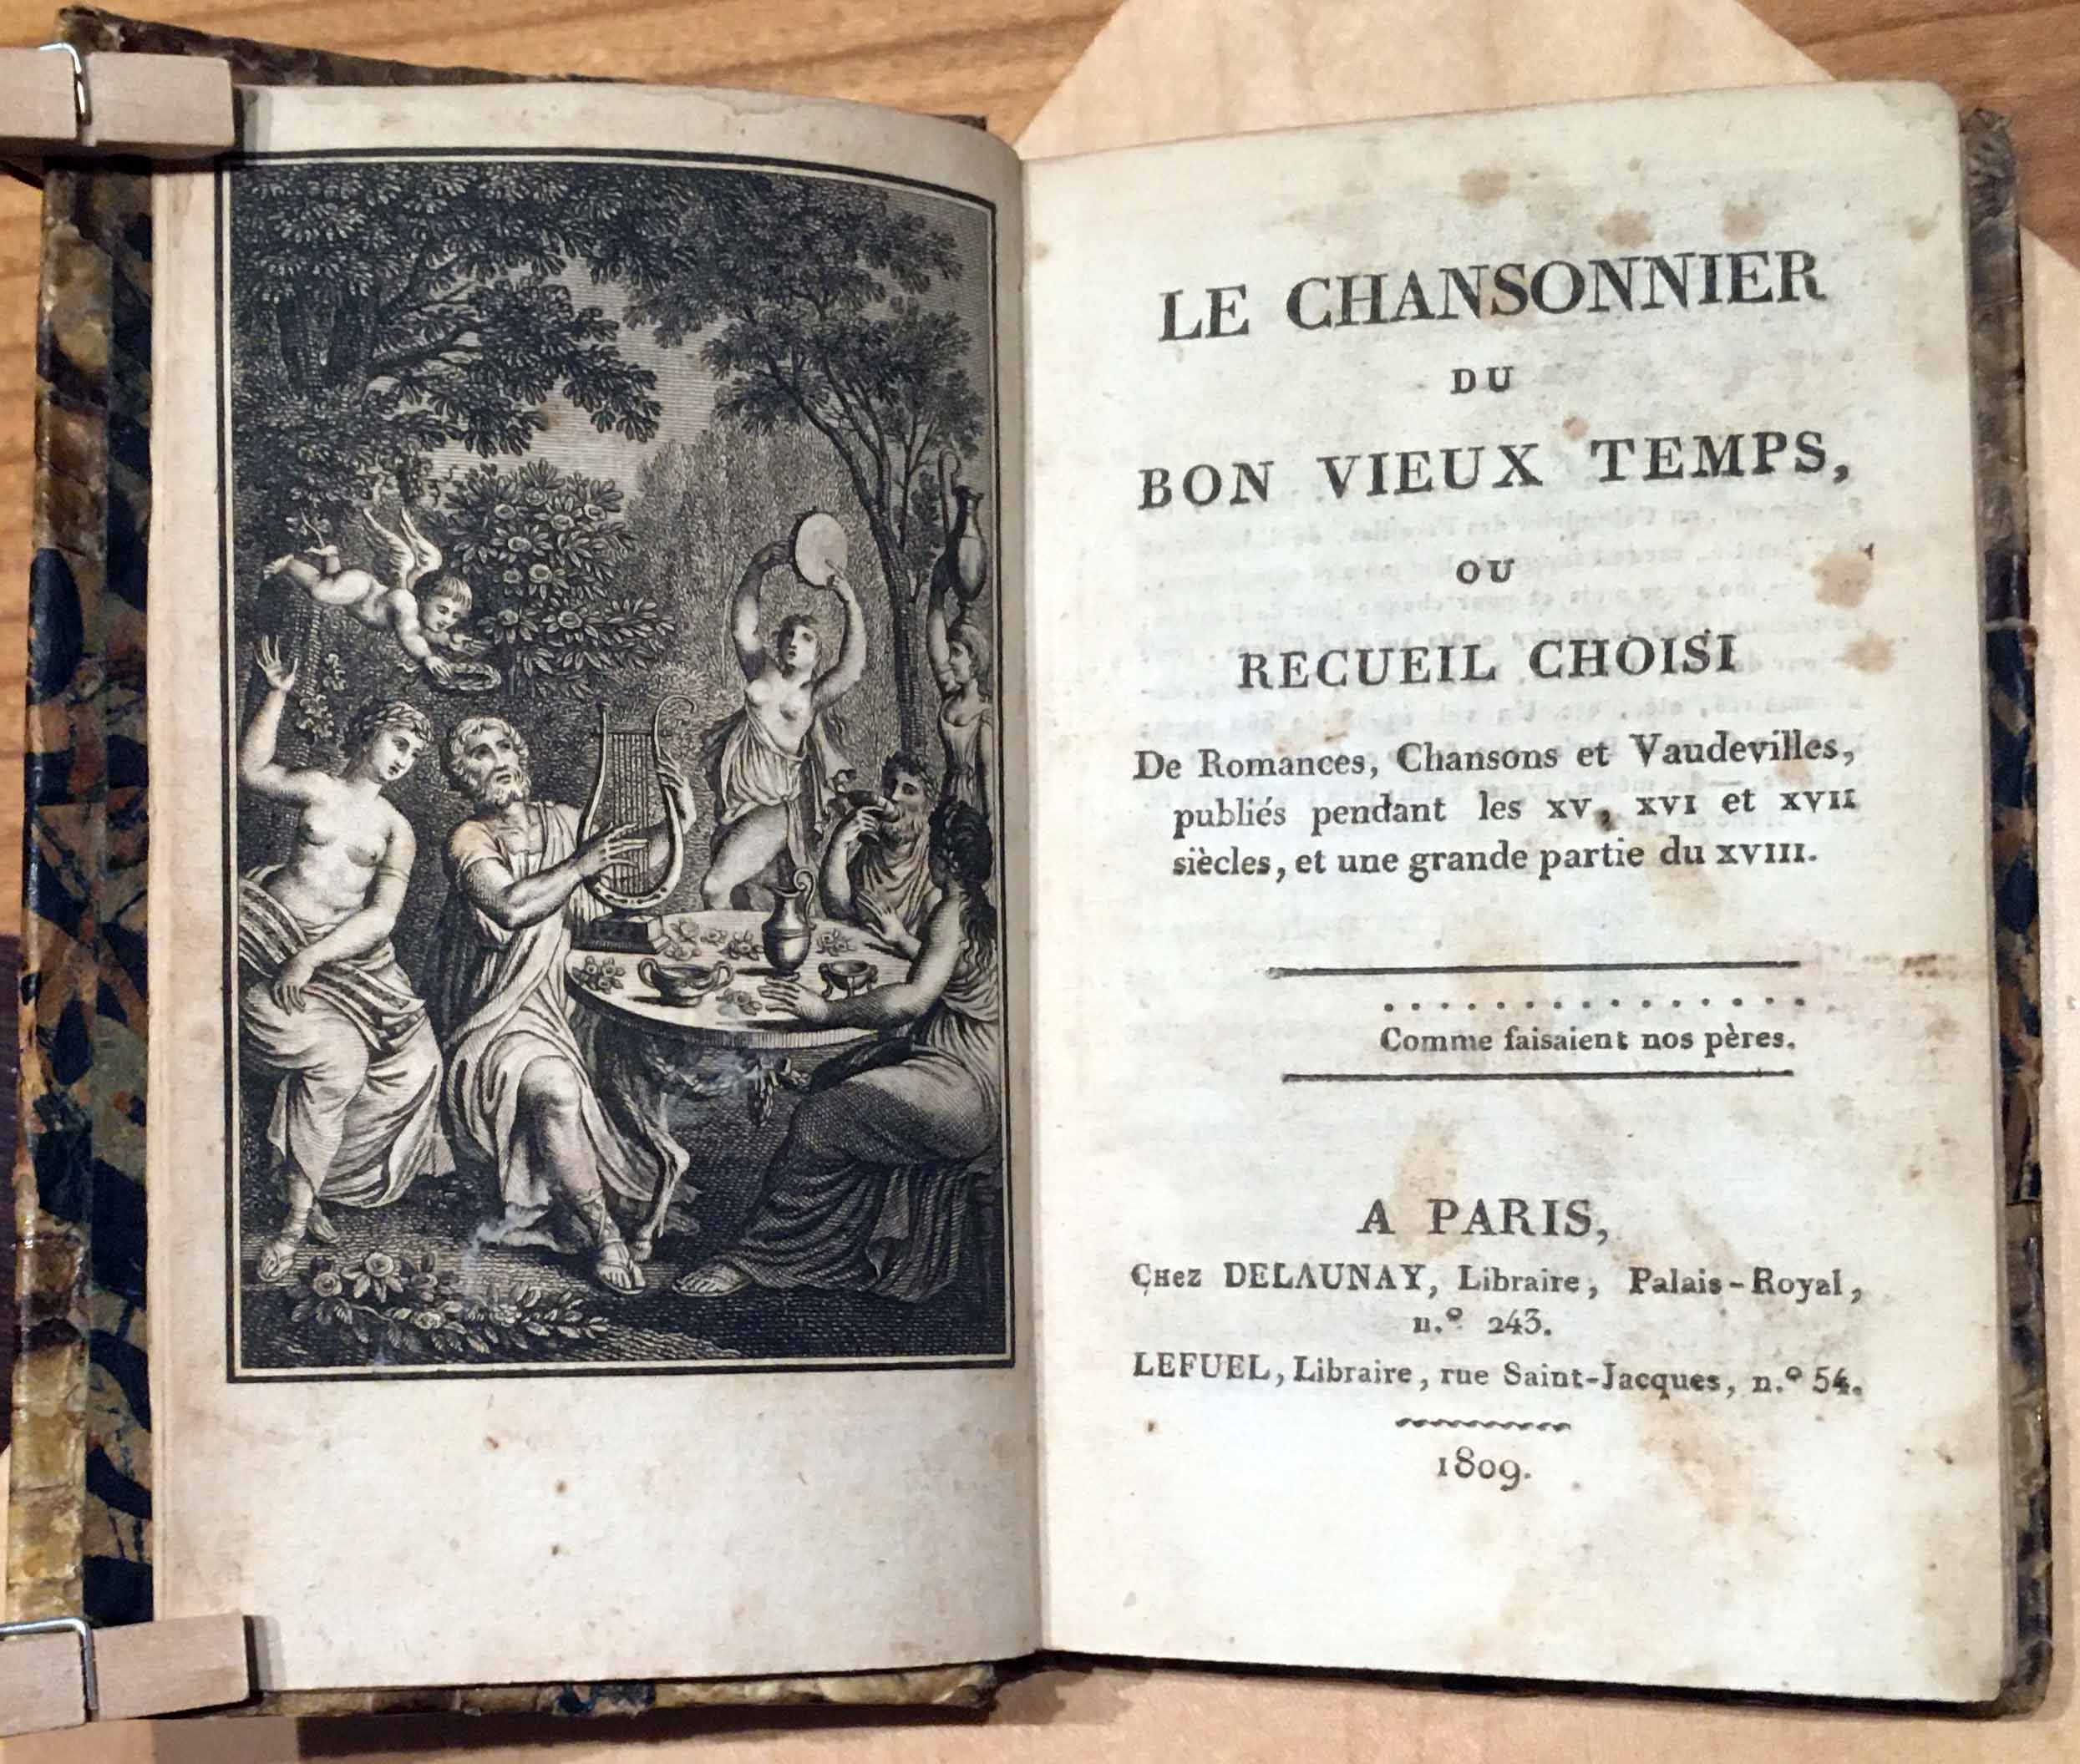 Le chansonnier du bon vieux temps ou recueil choisi / De Eomances, Chansons et Vaudevilles publiés pendand les XV, XVI et XVII siecles, et une grande partie du XVIII